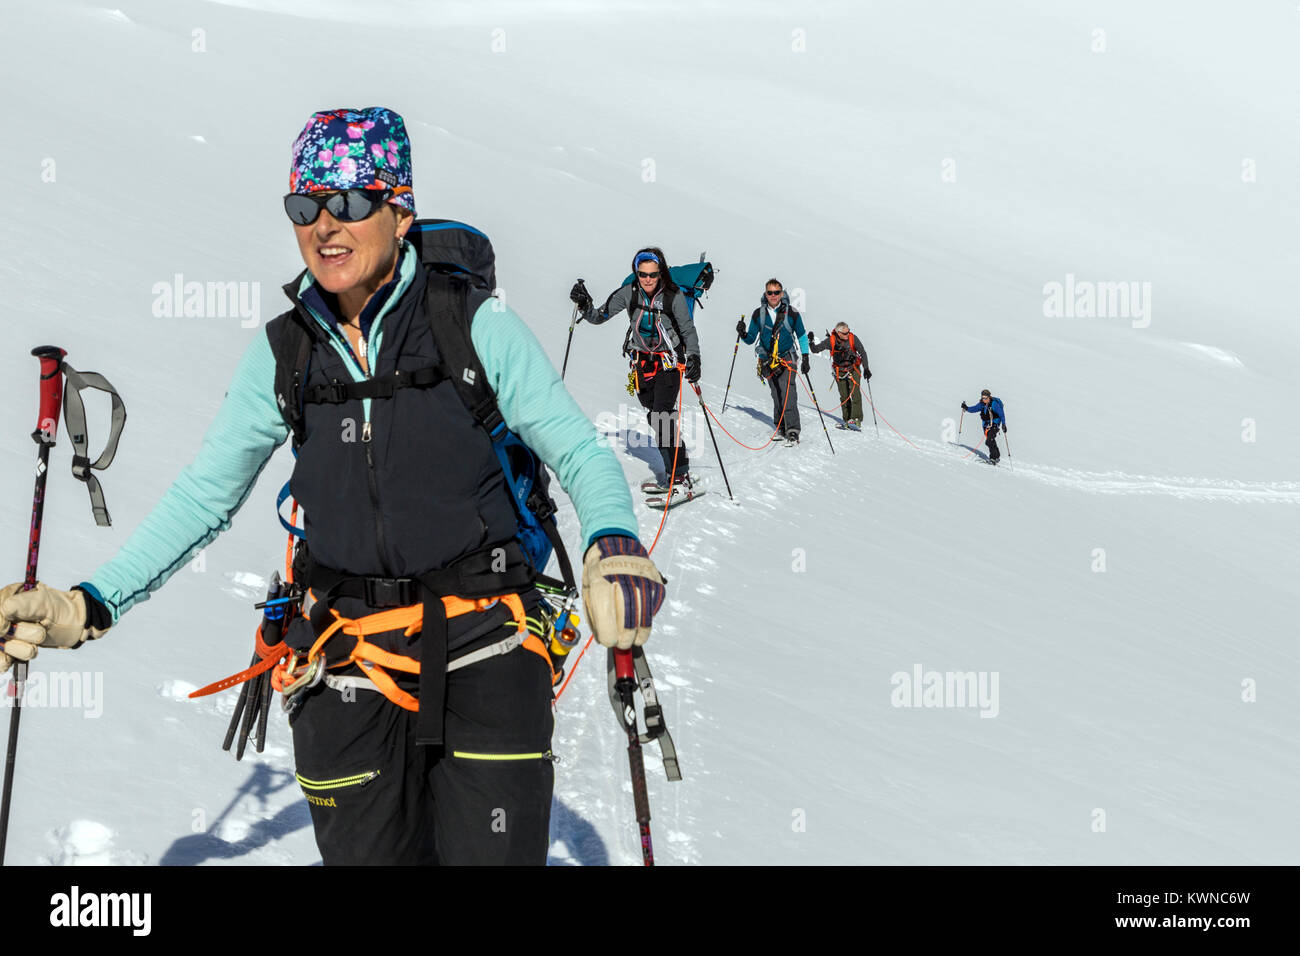 Les alpinistes encordés Ski ensemble pour la sécurité de l'utilisation des peaux synthétiques crevasses sur des skis à monter en amont, rongé ; île de la péninsule Antarctique Arctowski ; Banque D'Images